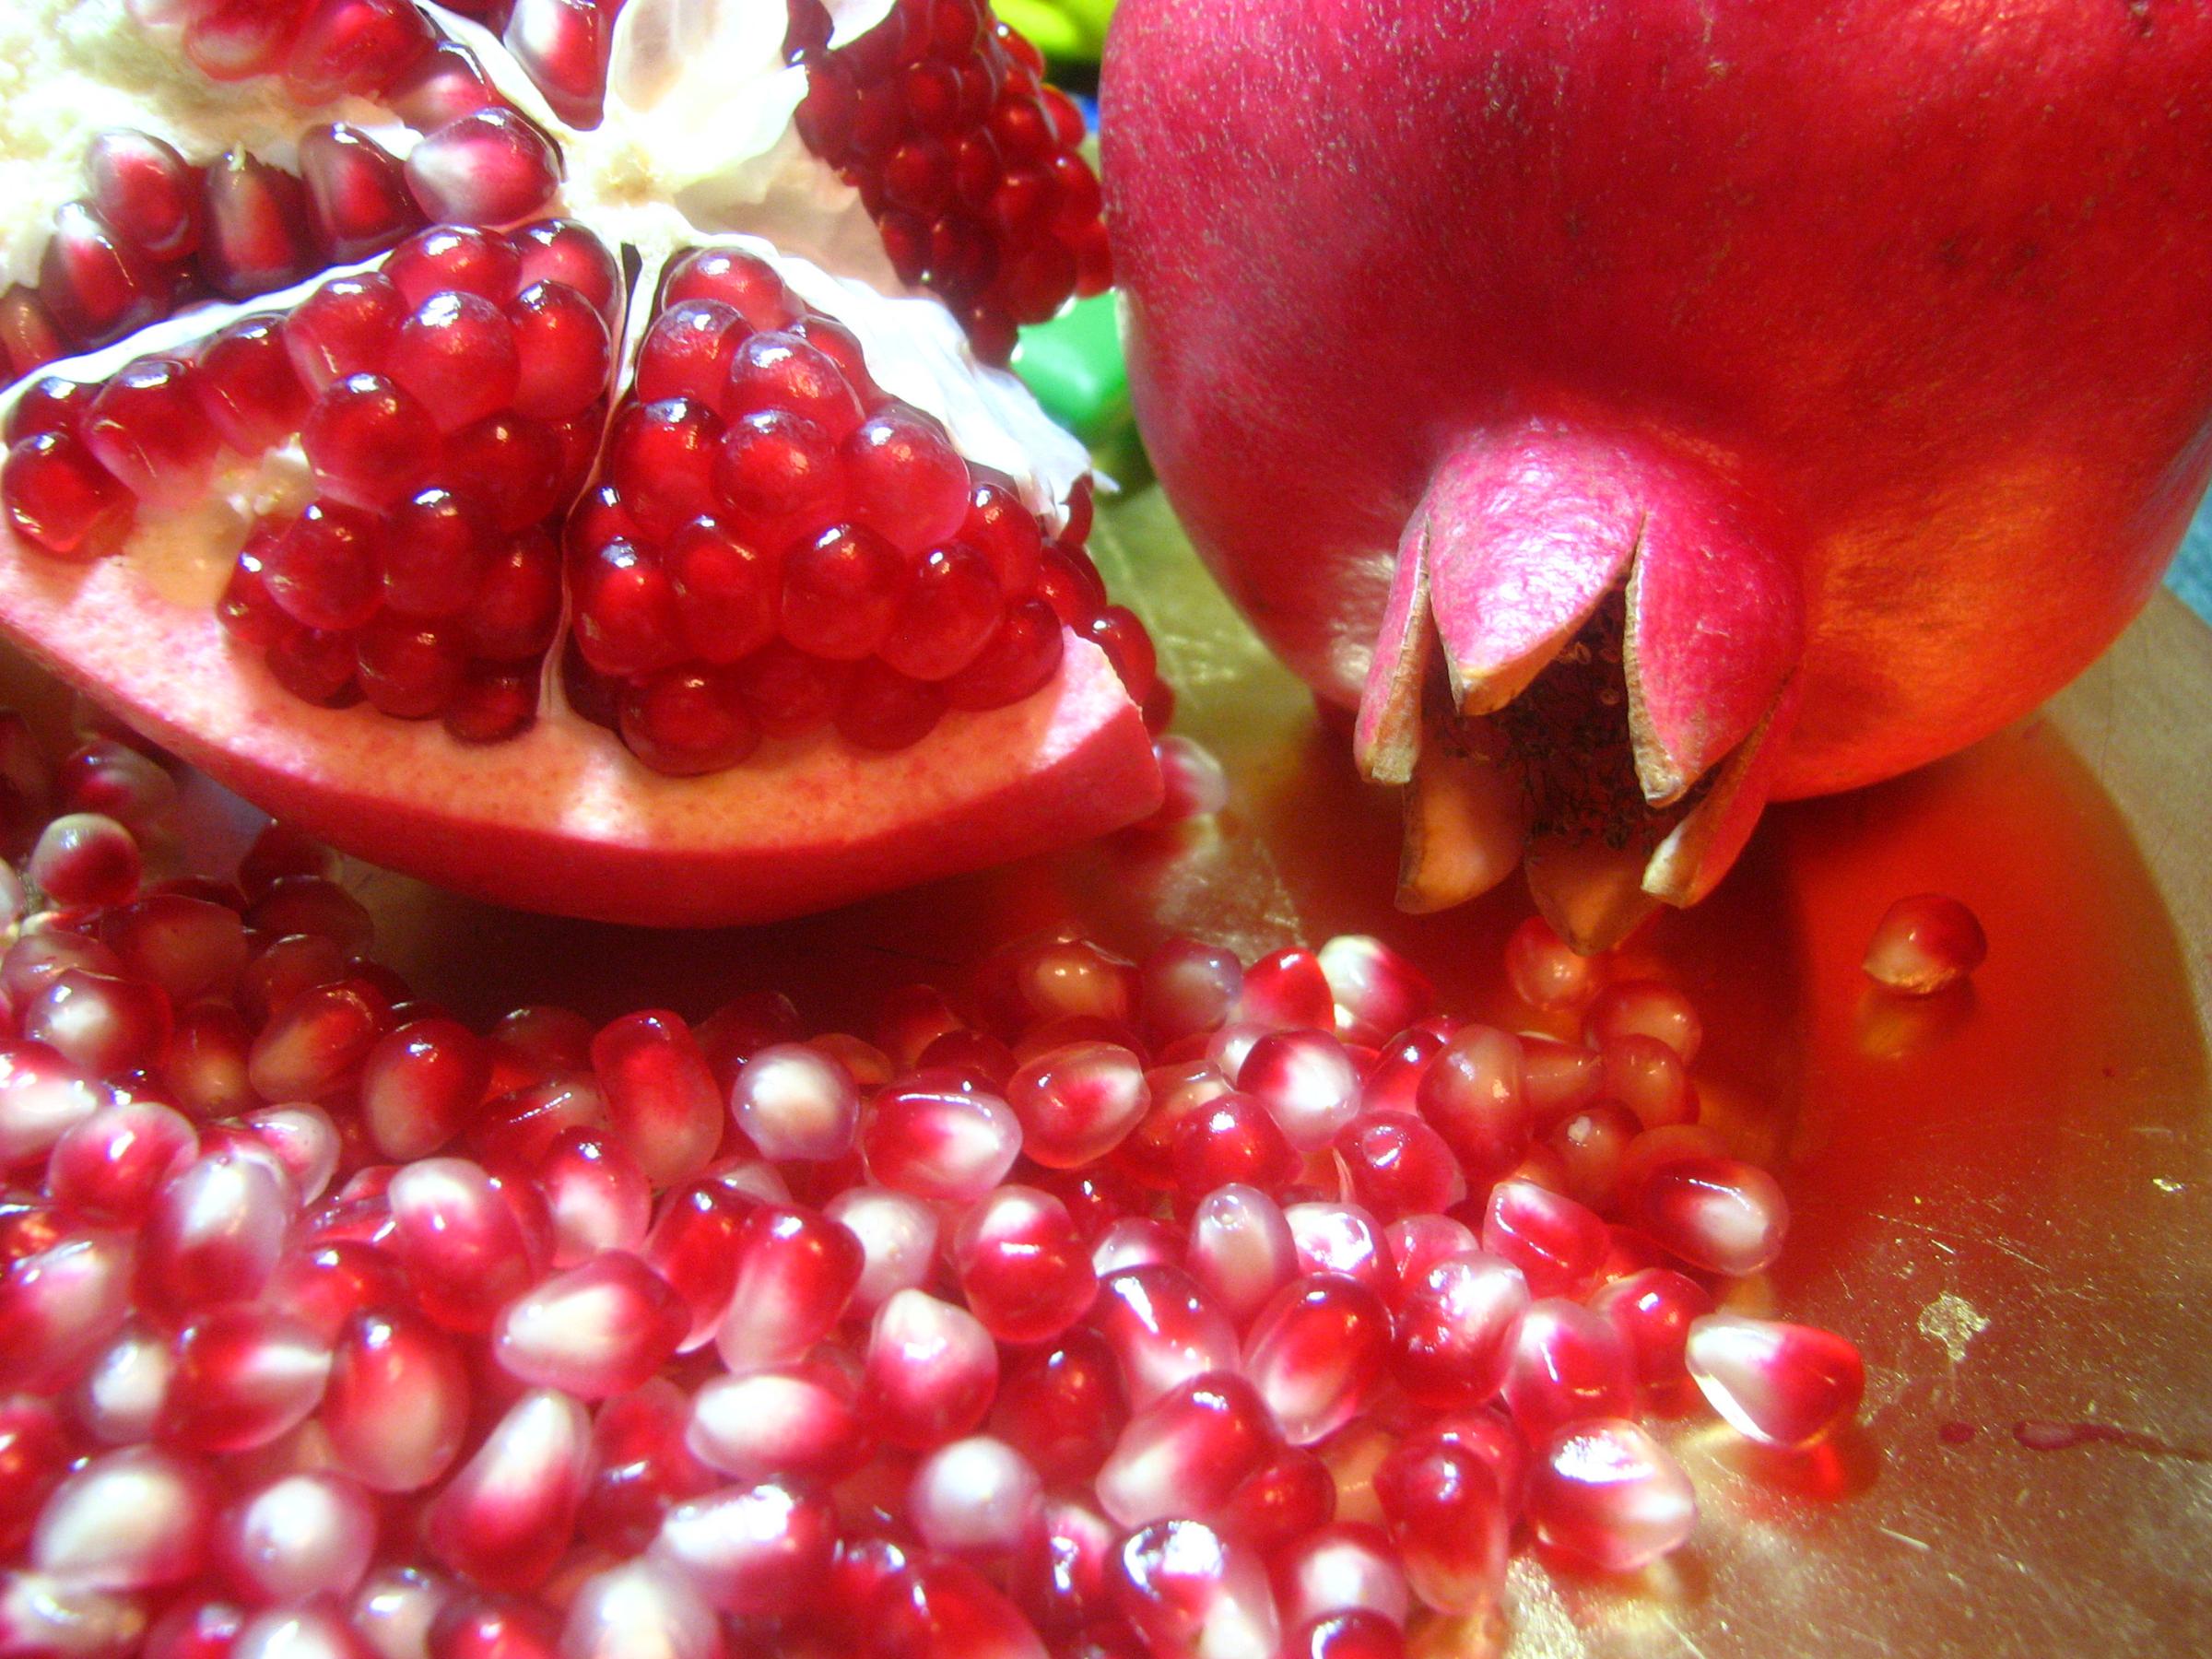 sfondi di immagini di frutta,alimenti naturali,frutta,melograno,cibo,frutti di bosco